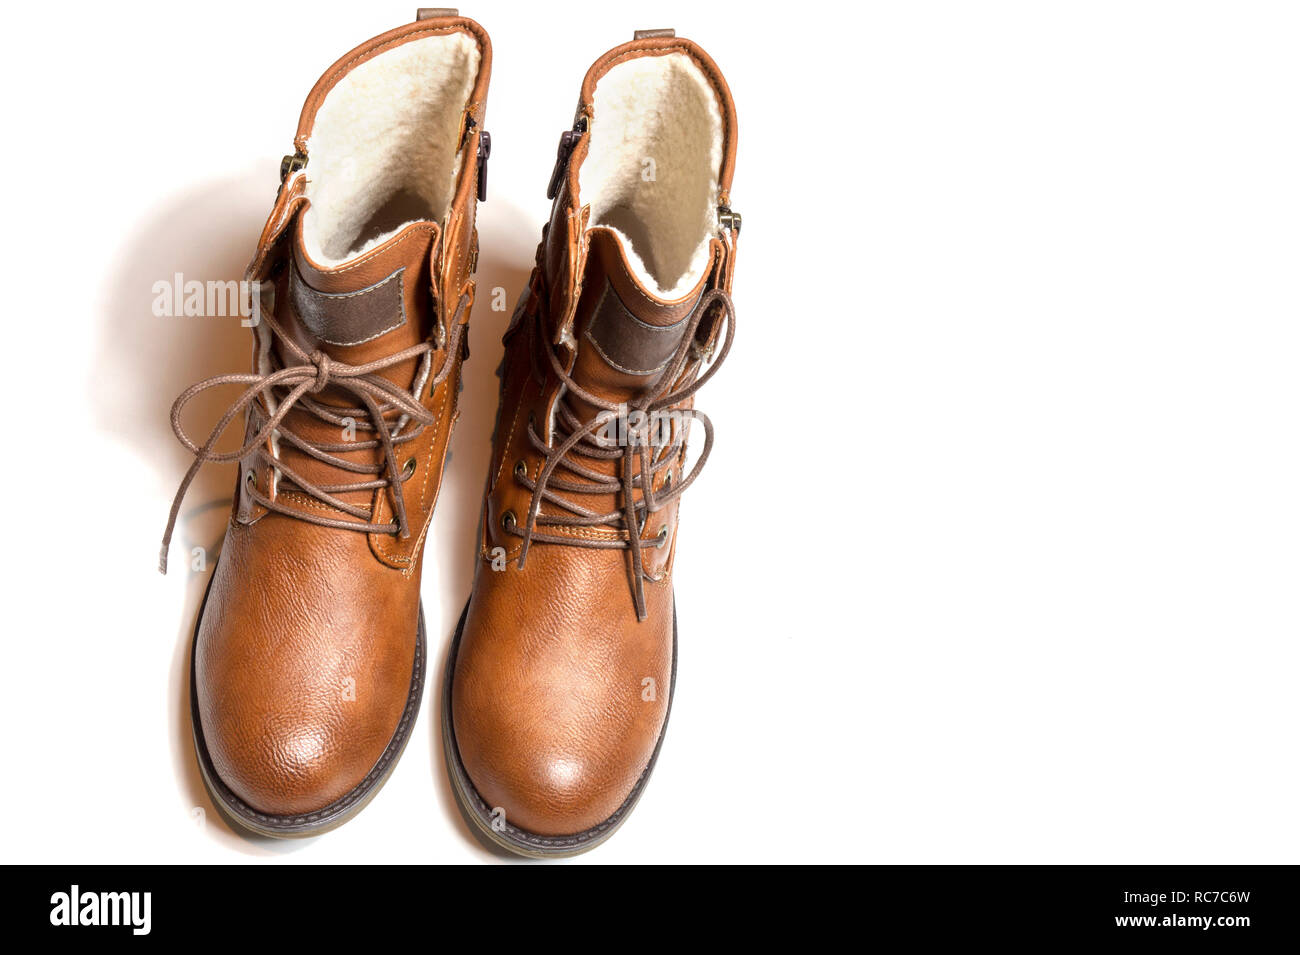 La mode des chaussures en cuir marron chaud pour l'hiver d'amorçage isolées sur fond blanc Banque D'Images